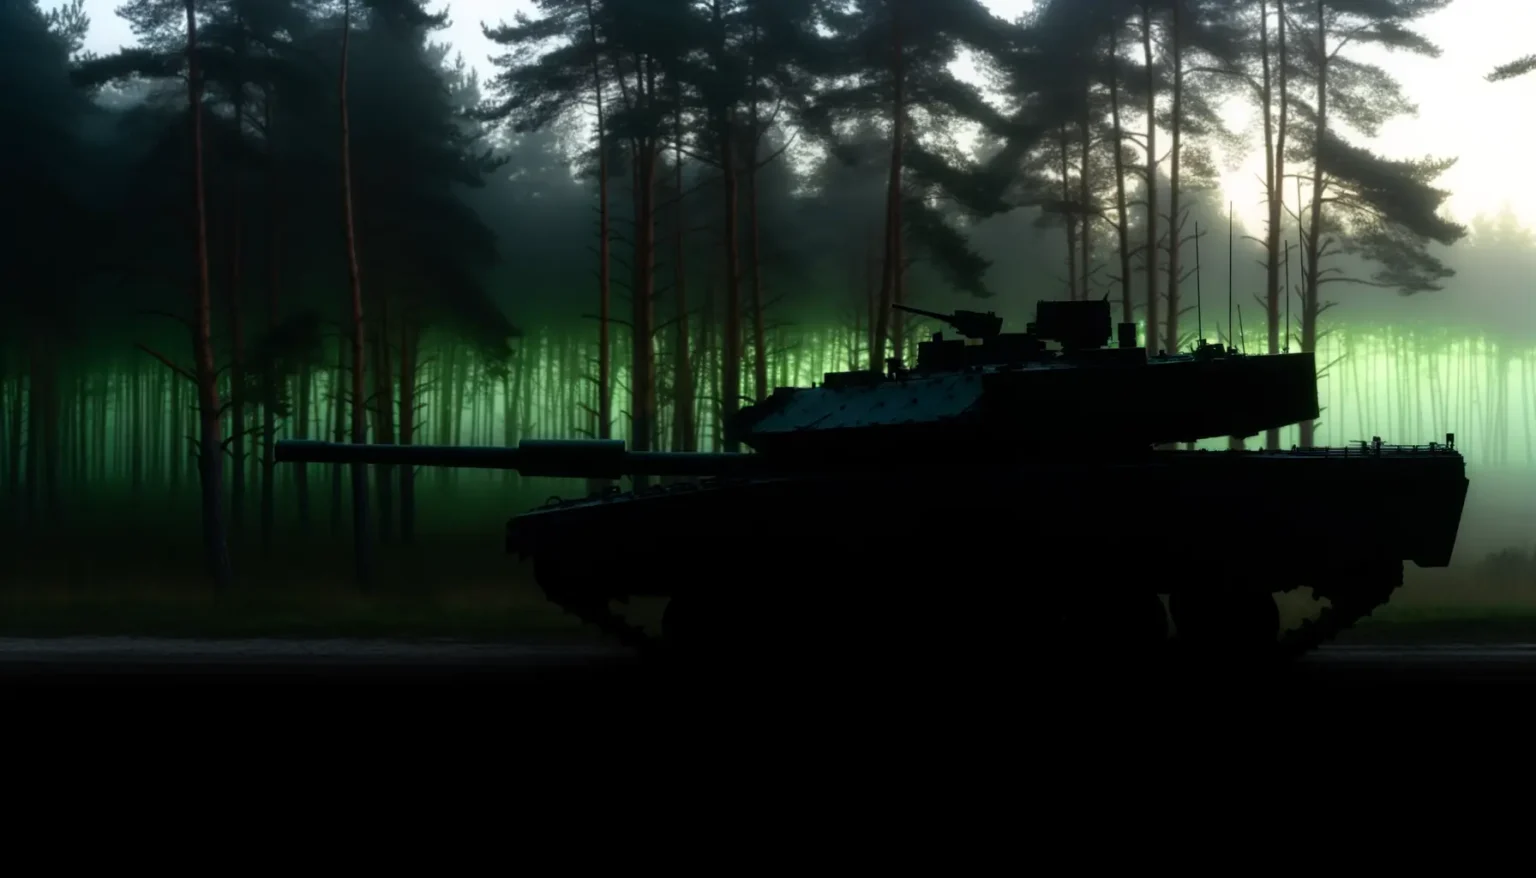 Ein Kampfpanzer im Vordergrund als Silhouette, steht an einem Waldrand bei Dämmerung oder im frühmorgendlichen Licht. Der Wald im Hintergrund ist in Nebel getaucht, der in Grüntönen leuchtet, möglicherweise durch Lichtstrahlen, die durch die Bäume fallen.